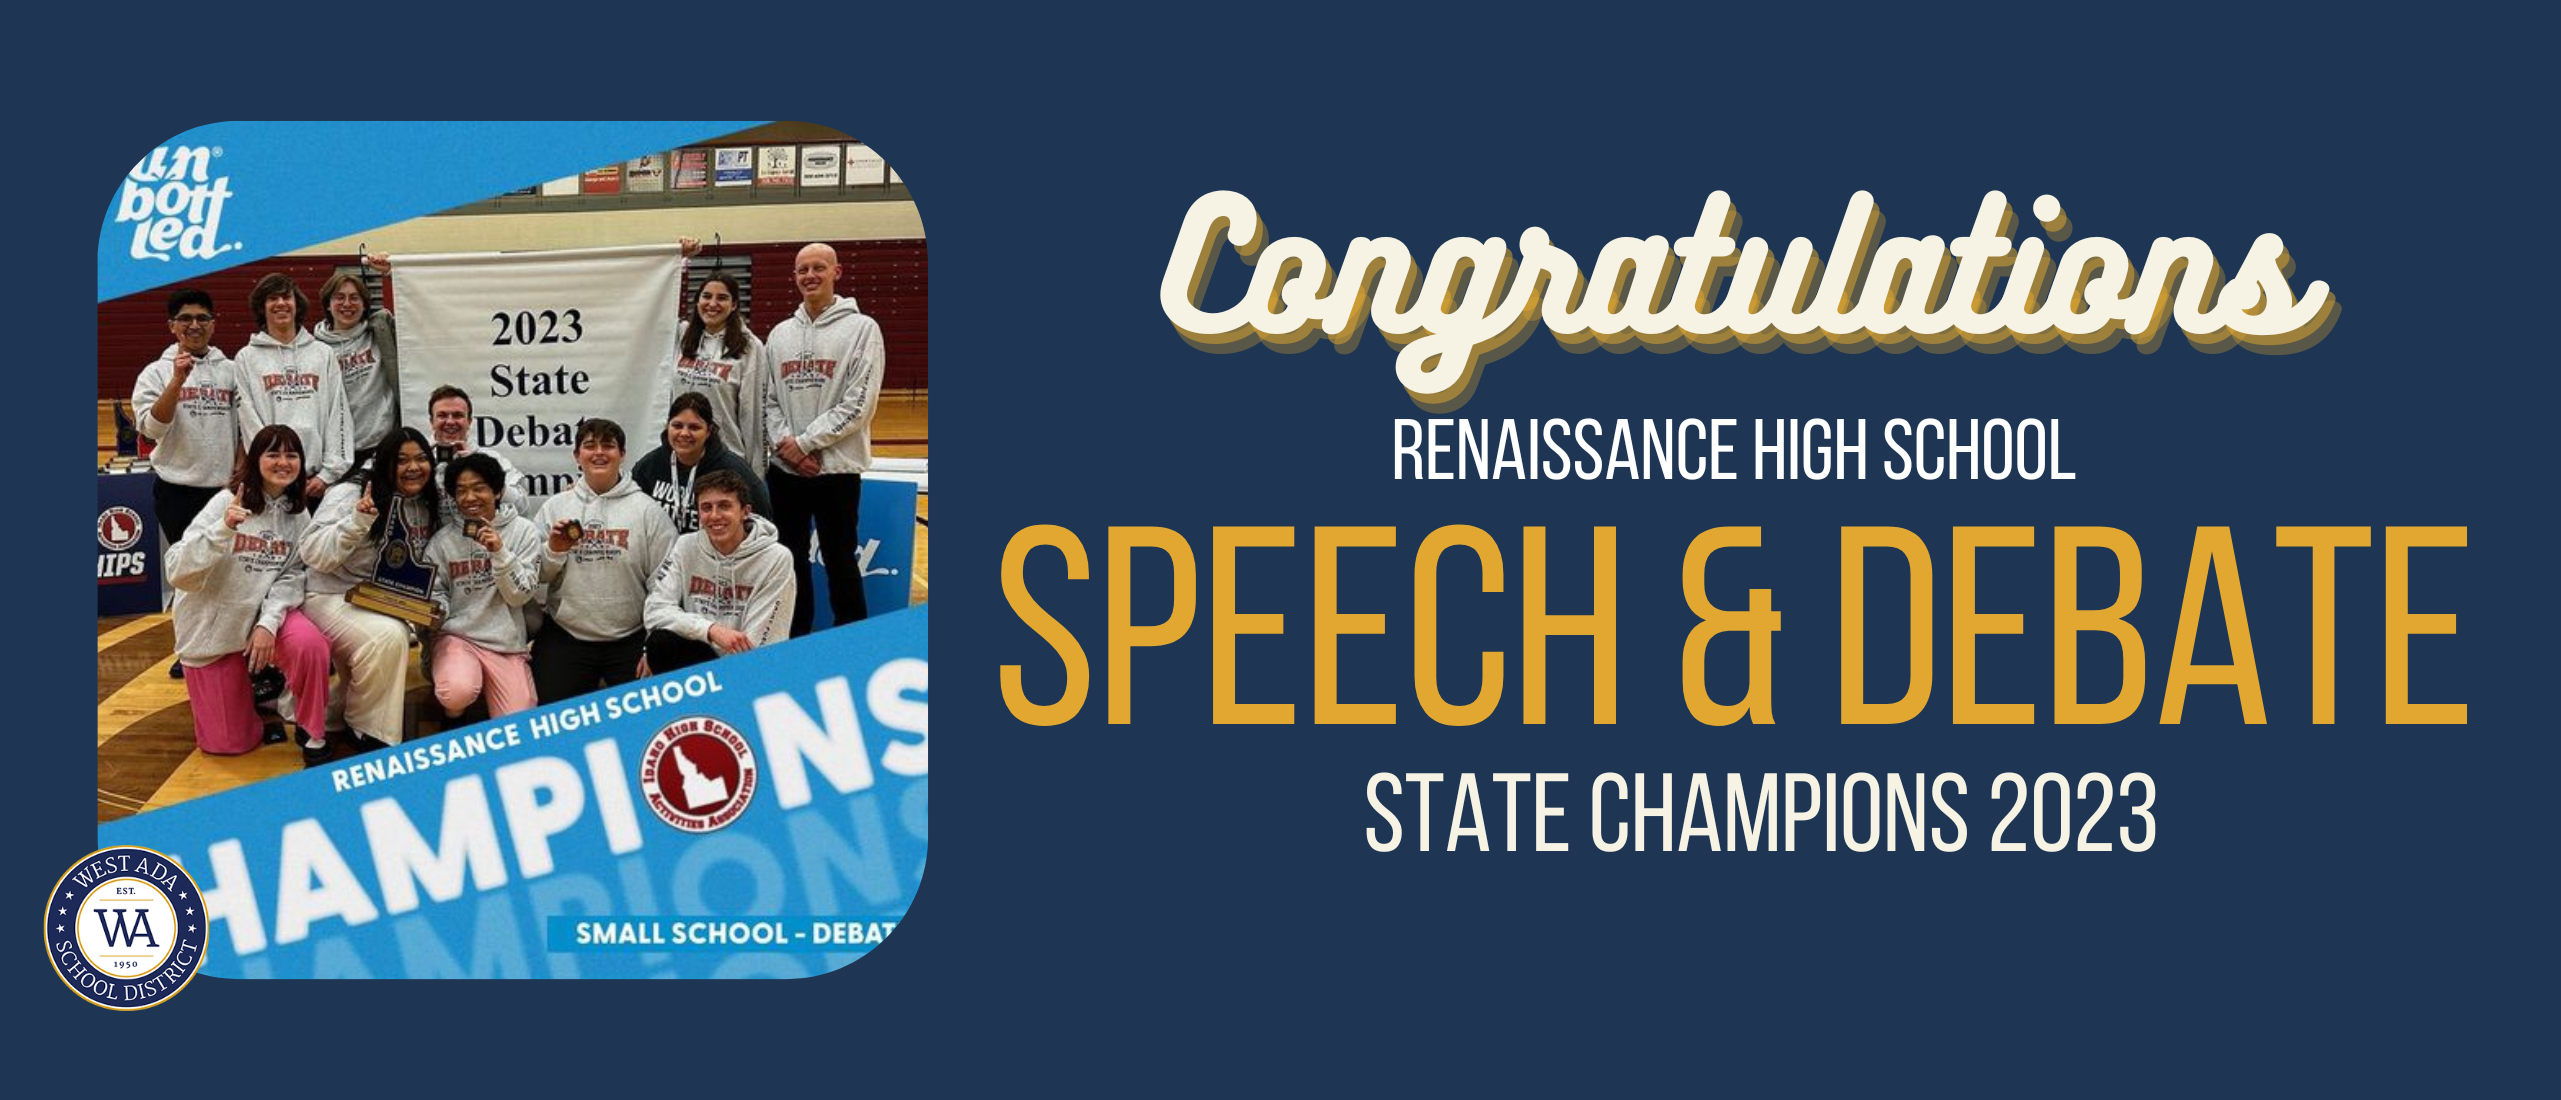 congratulations renaissance high school speech and debate state champion